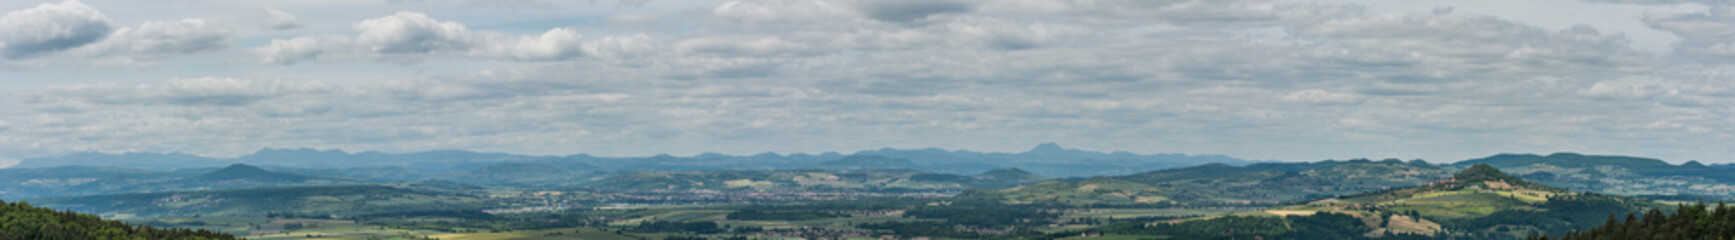 vue panoramique des monts d' Auvergne